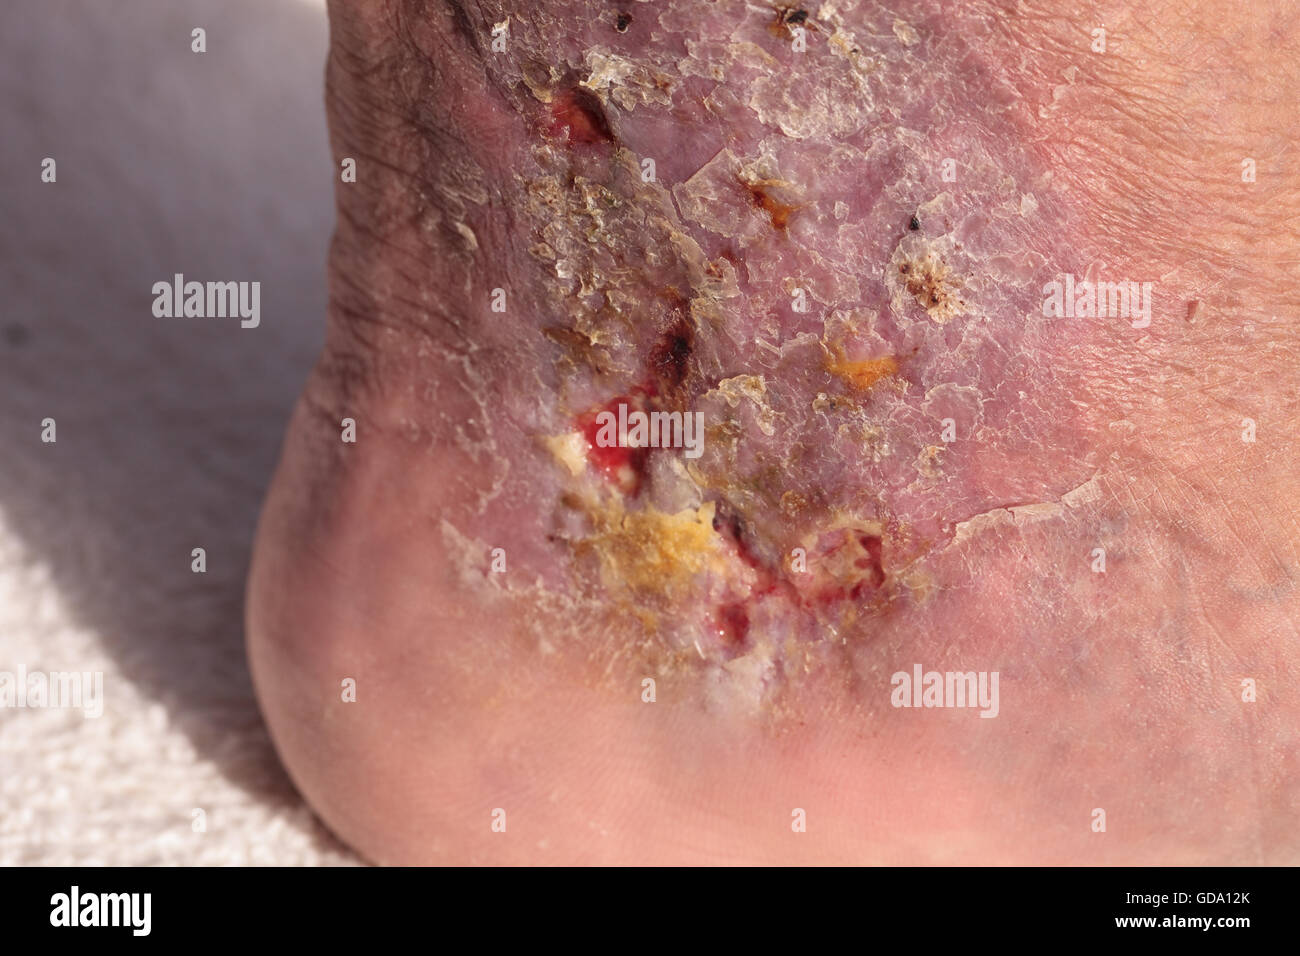 Immagini mediche: infezione cellulite sulla pelle di una caviglia causato da flebite e coaguli di sangue nella vena. Foto Stock